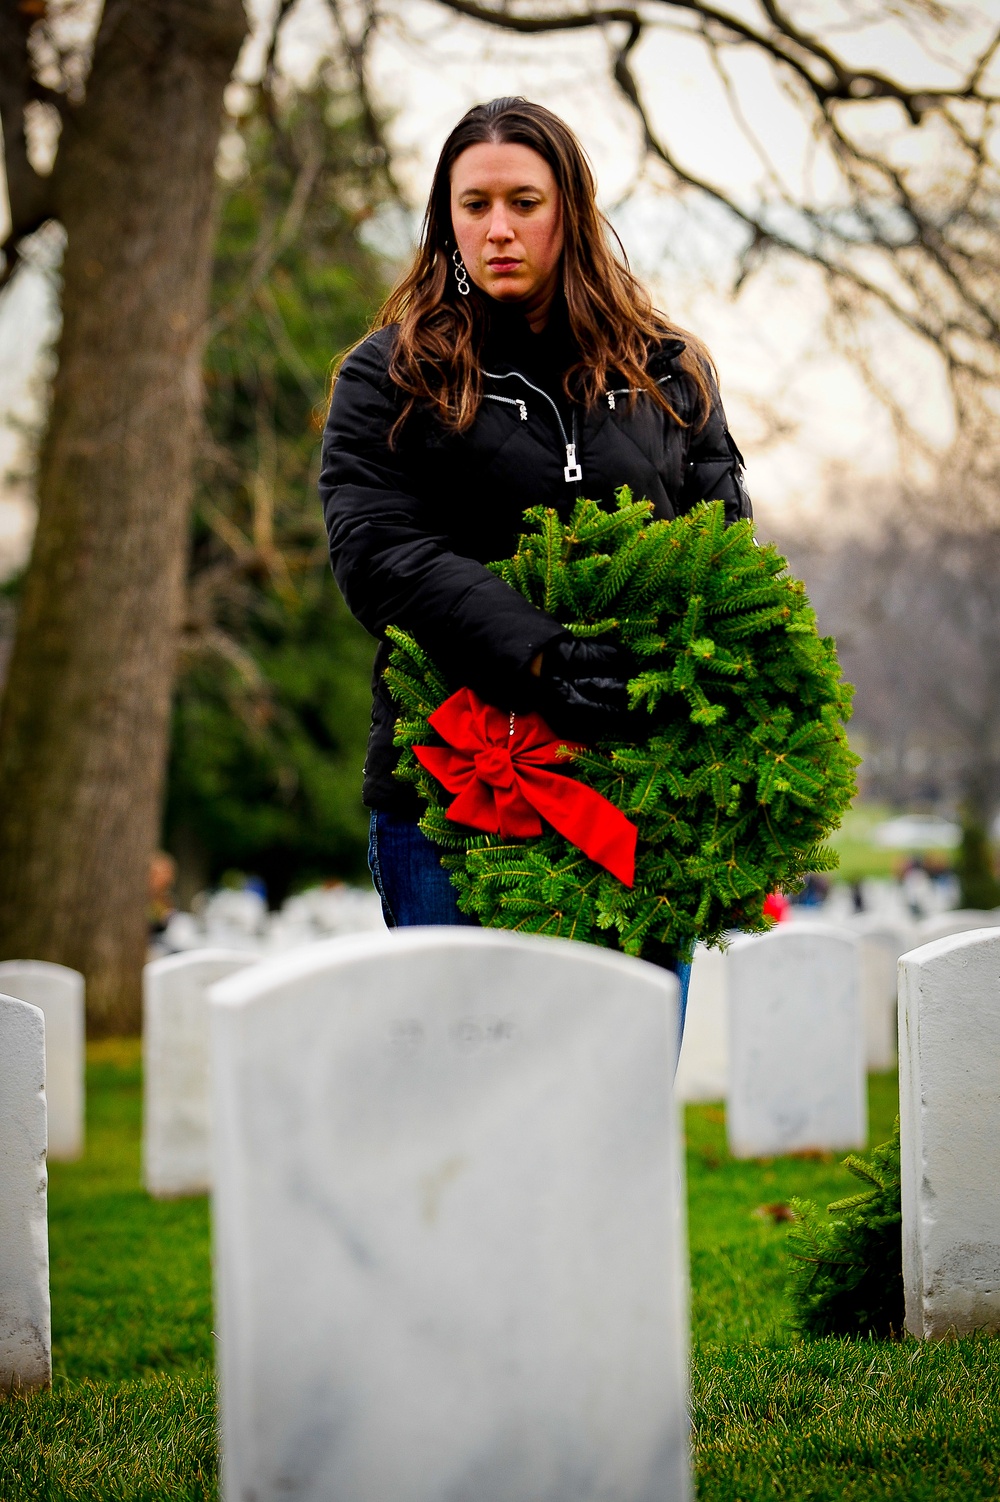 Wreaths Across America at Arlington National Cemetery